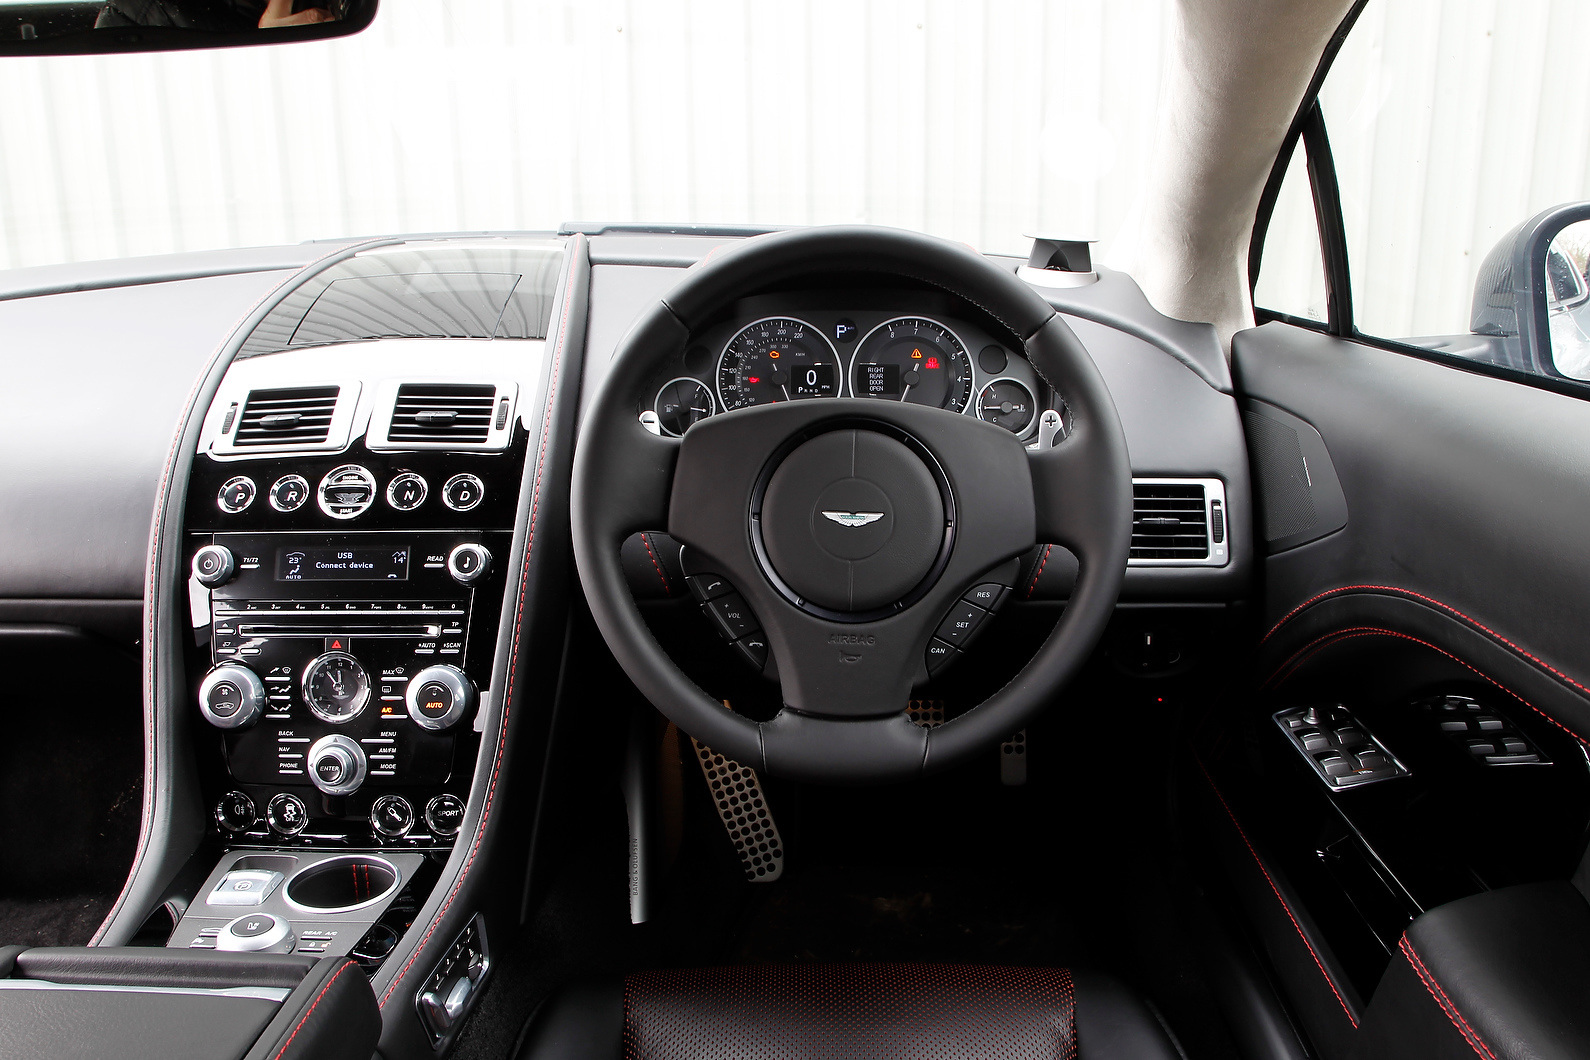 Aston Martin Rapide's interior